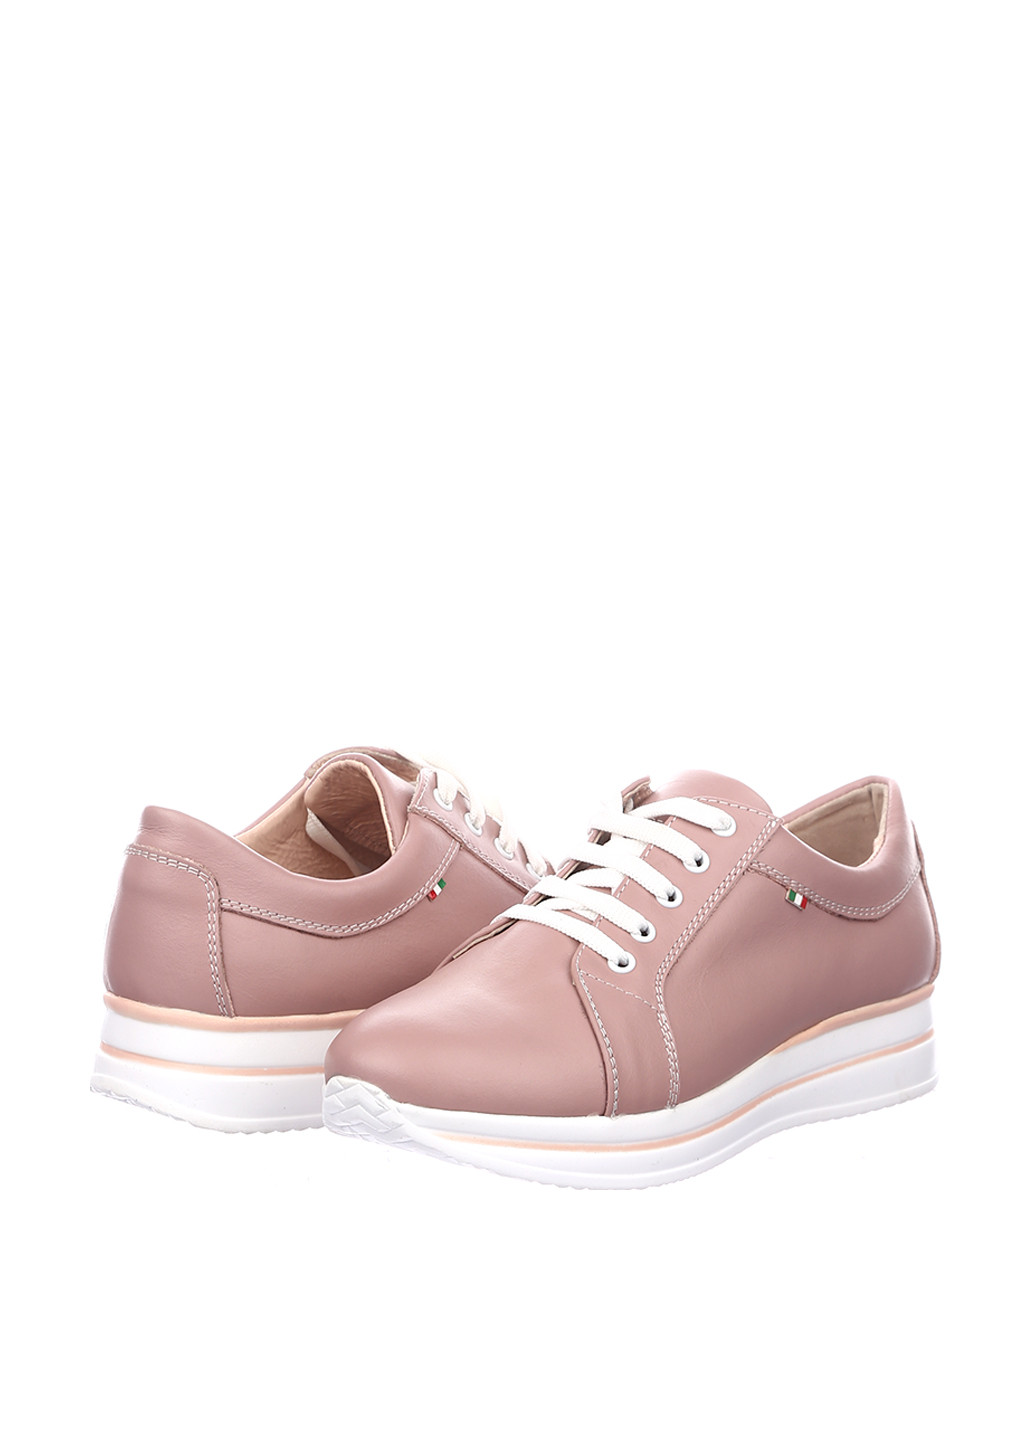 Світло-рожеві осінні кросівки Libero